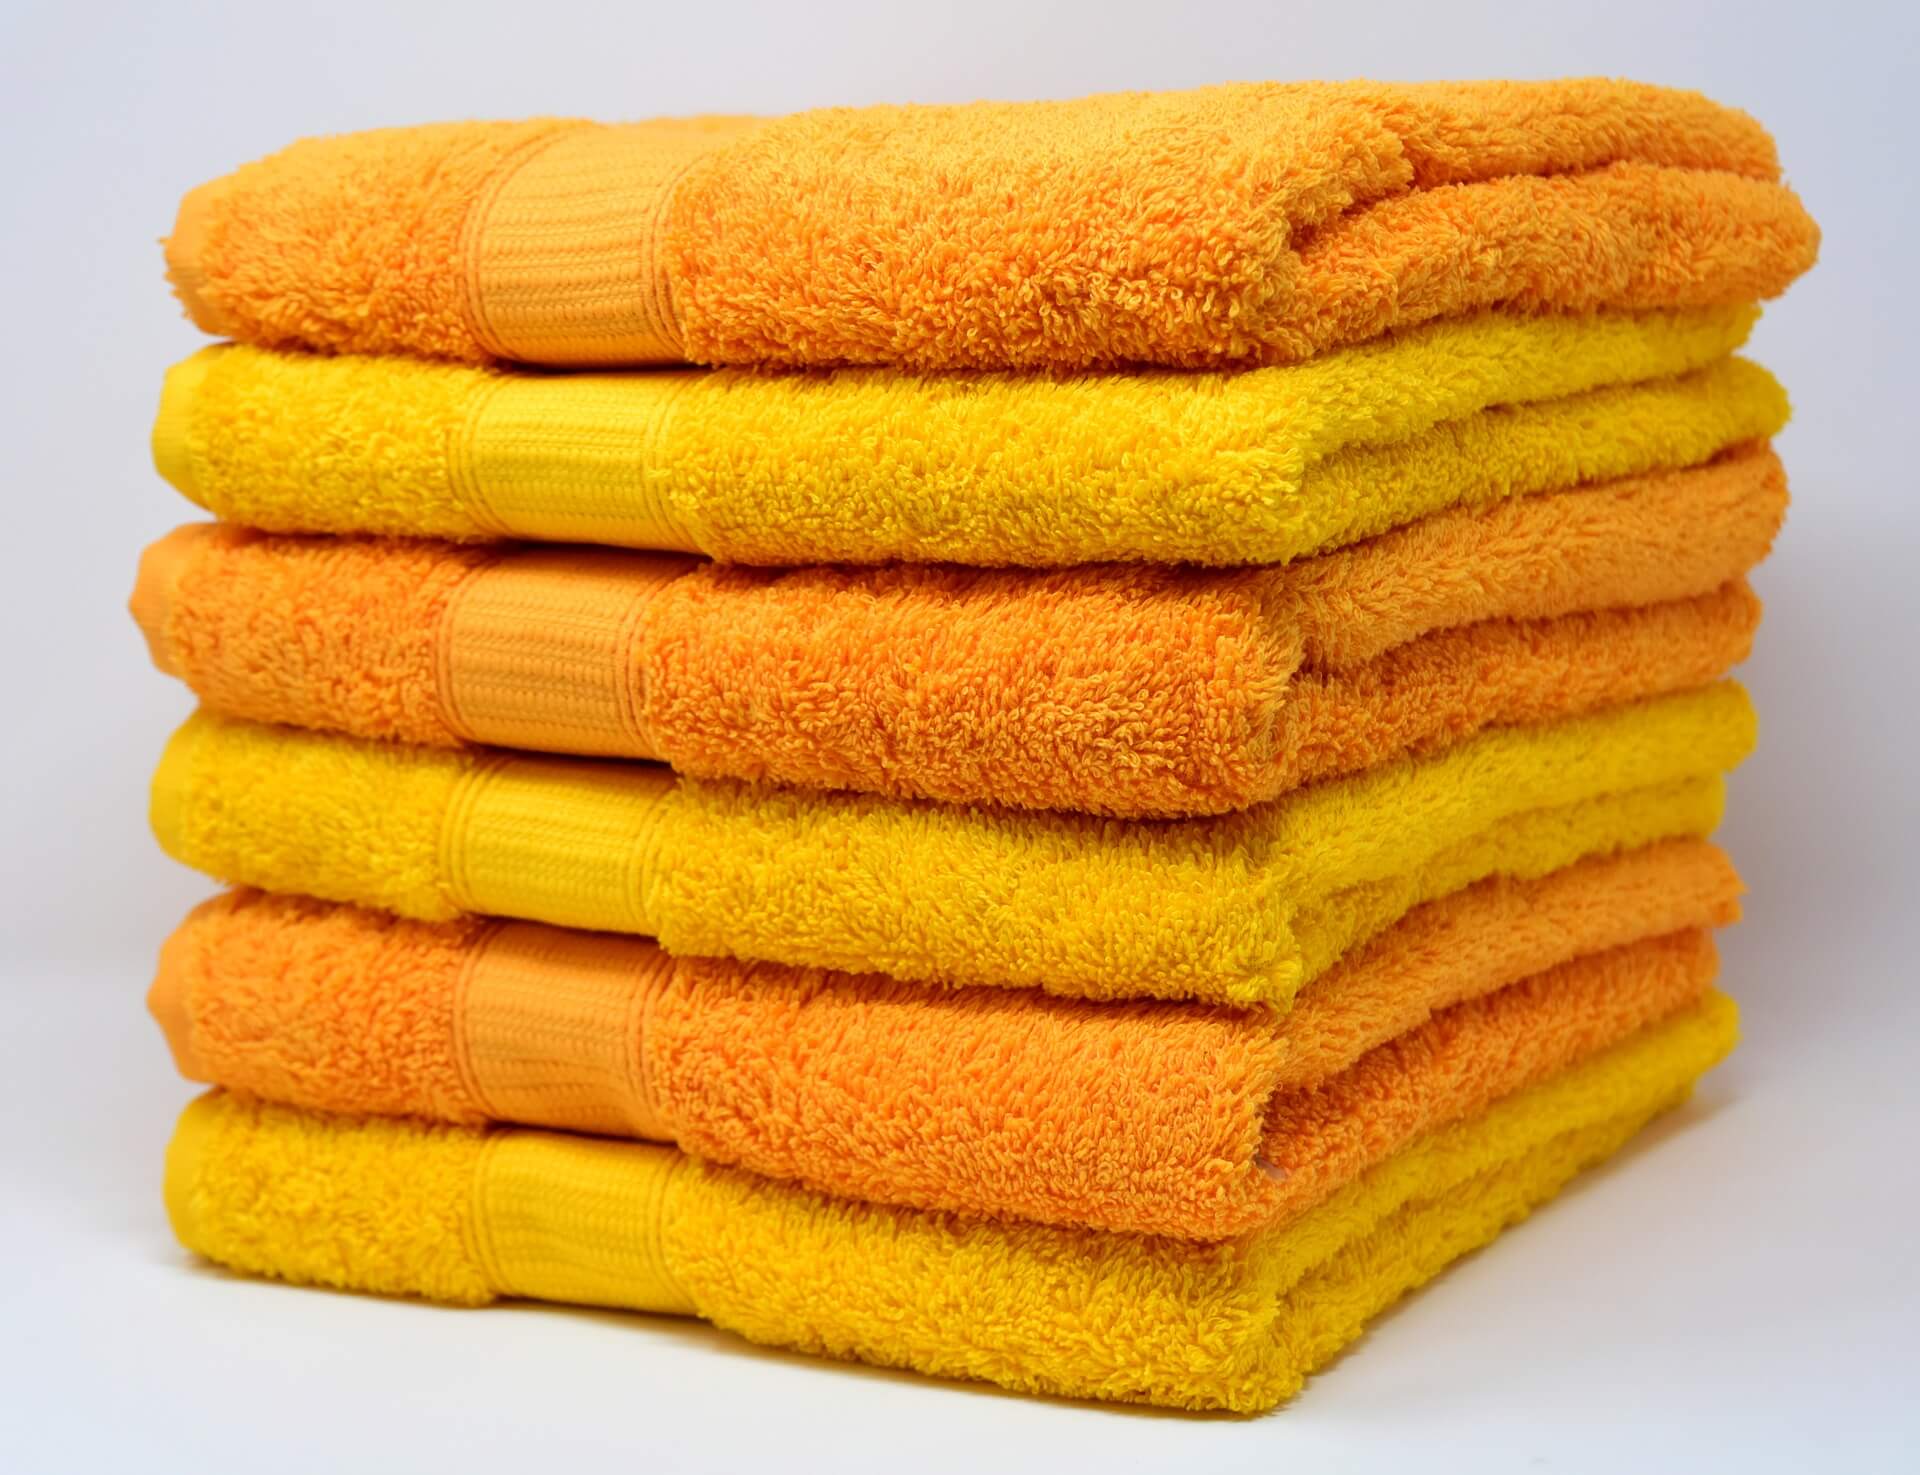 Contribuir rasguño jalea Trucos para conseguir toallas más suaves y esponjosas | Interdomicilio